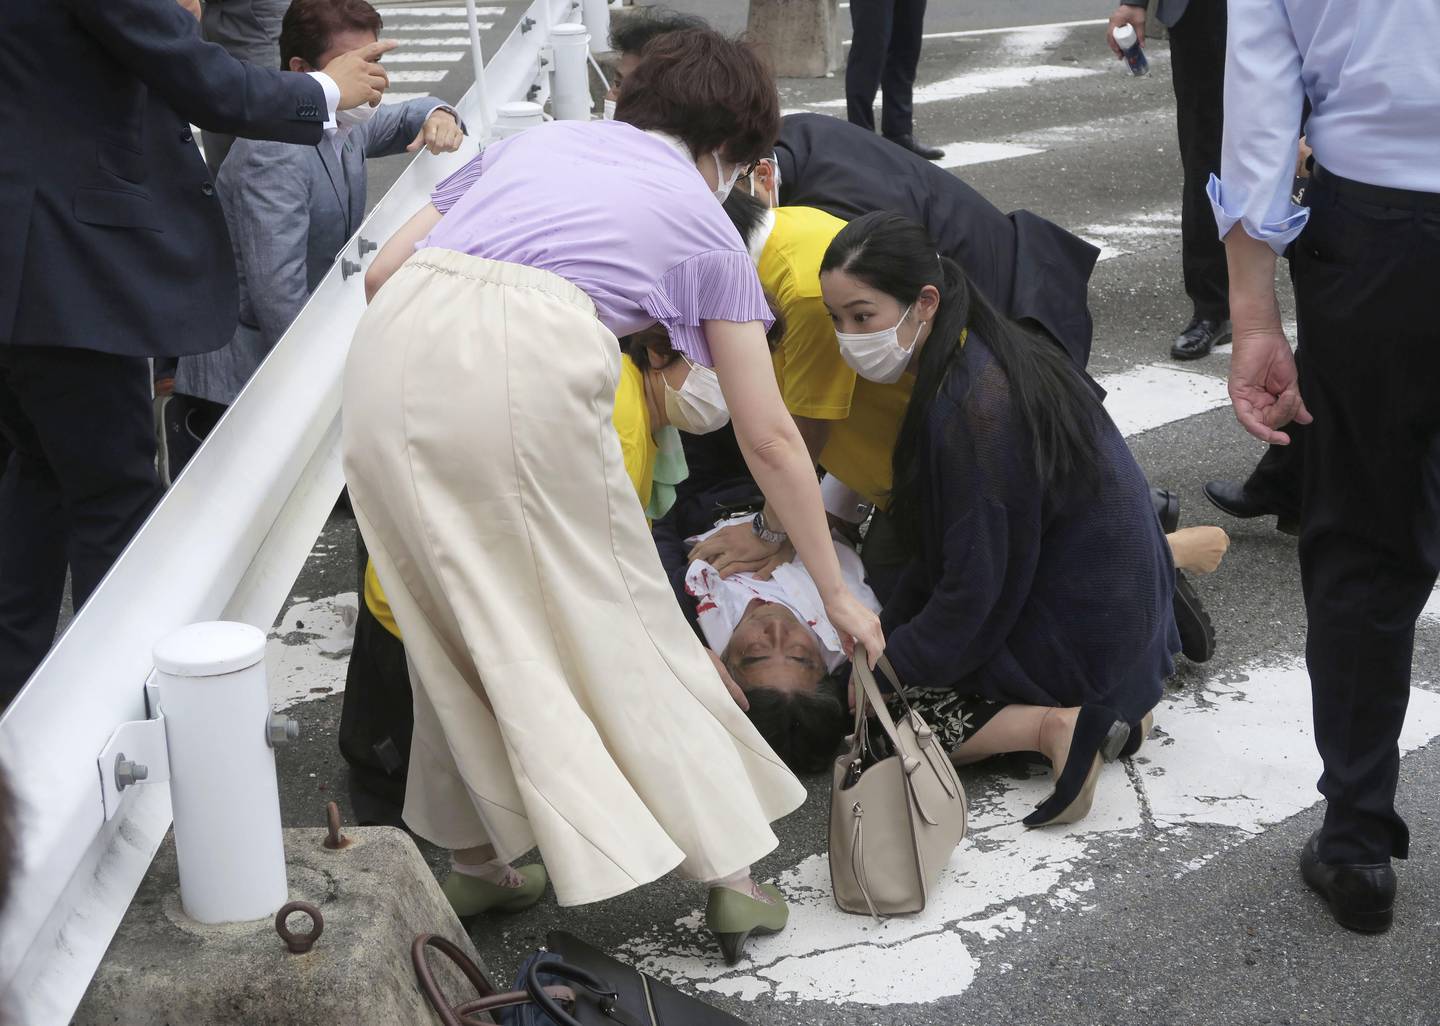 Abe falt om etter å ha blitt skudd. Eksstatsministeren skal ha fått hjertesvikt og sluttet å puste. Tilstanden hans er uklar, men fryktes å være alvorlig. Foto: Kyodo News / AP / NTB